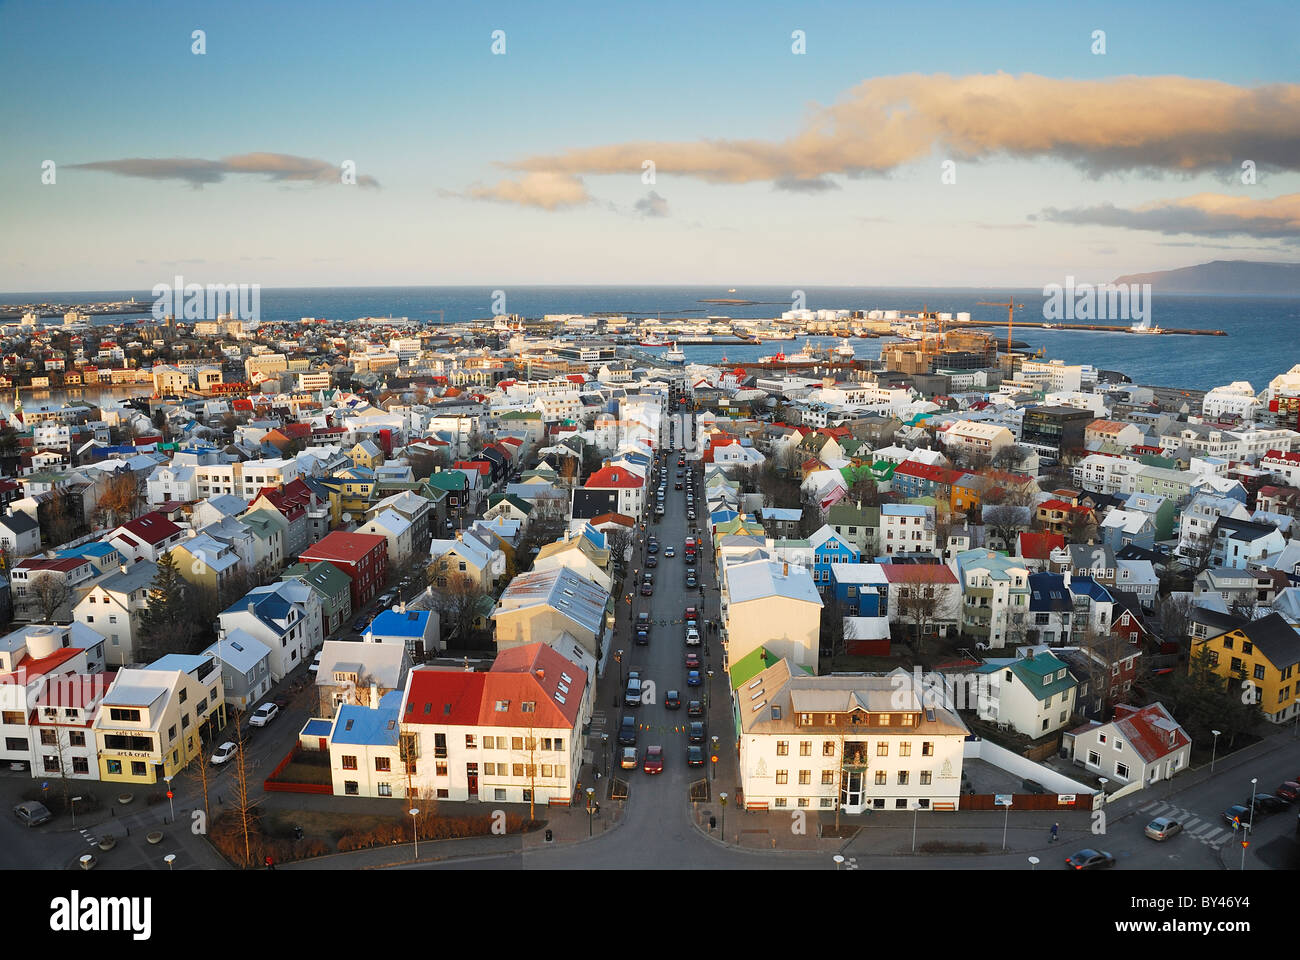 Vue aérienne de la ville de Reykjavik en Islande sur un matin d'hiver ensoleillé. Prise depuis le sommet de la cathédrale Hallgrimskirkja Banque D'Images